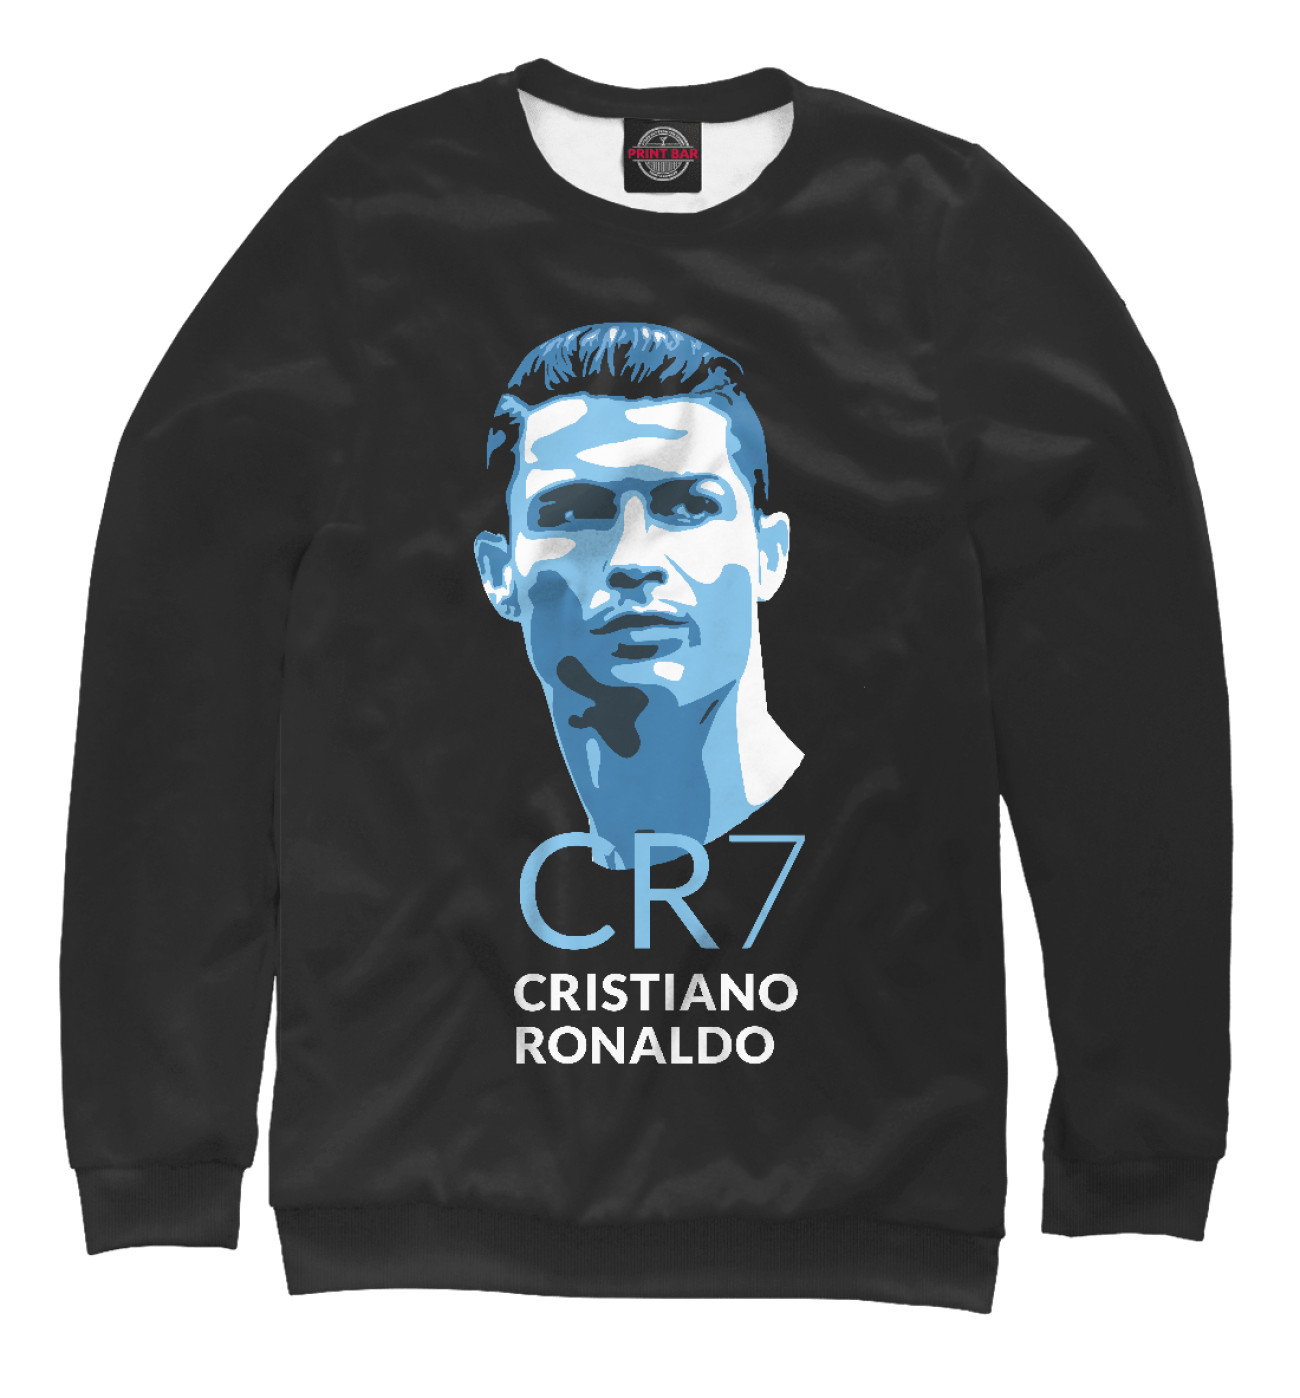 Мужской Свитшот Cristiano Ronaldo, артикул: CRR-508879-swi-2